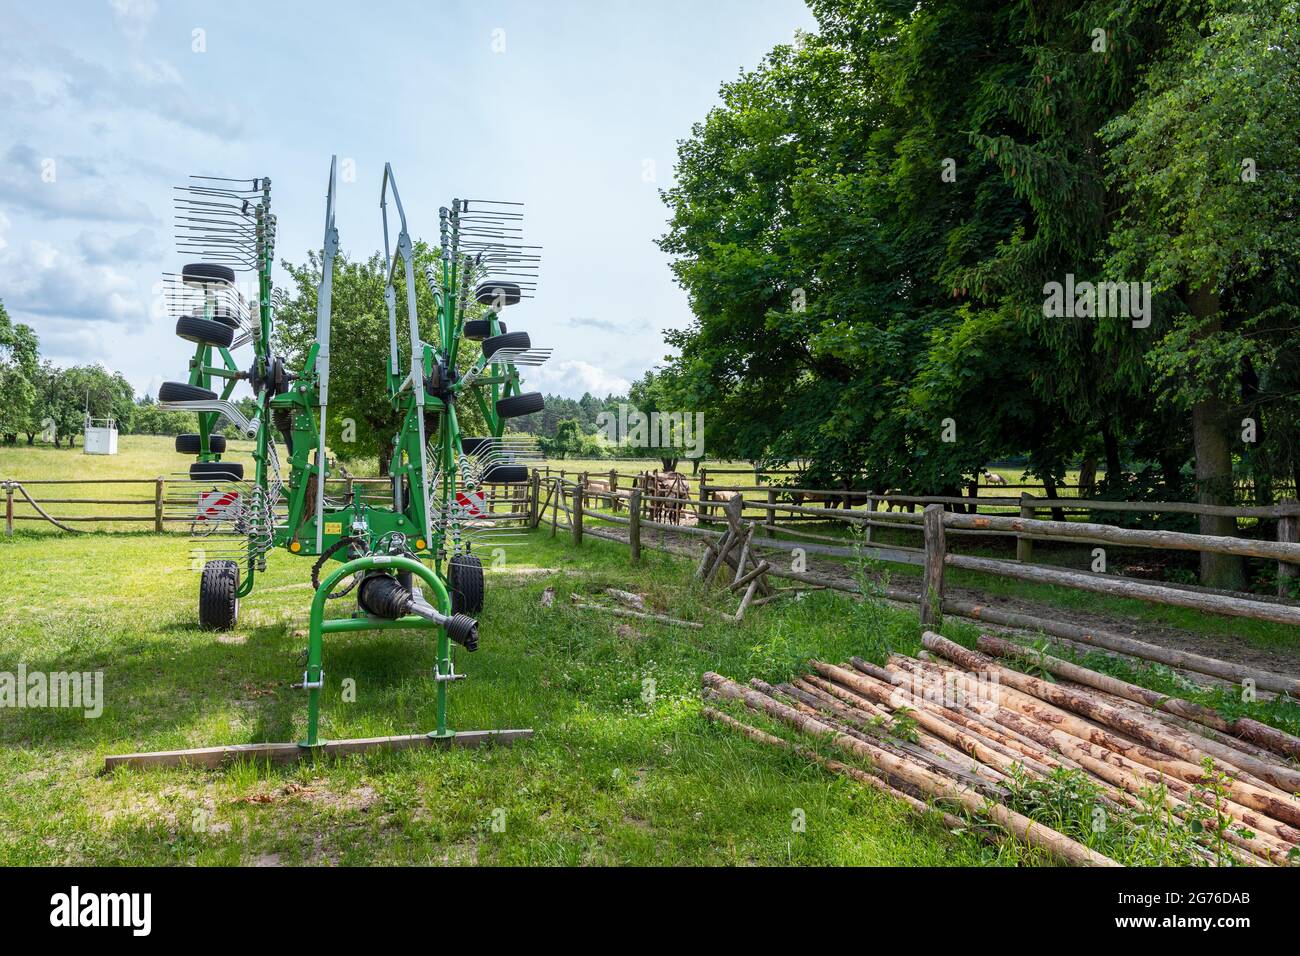 Bunte Landmaschinen - ländliche Geräte stehen auf einem Bauernhof, umgeben von Bäumen an einem sonnigen Tag Stockfoto